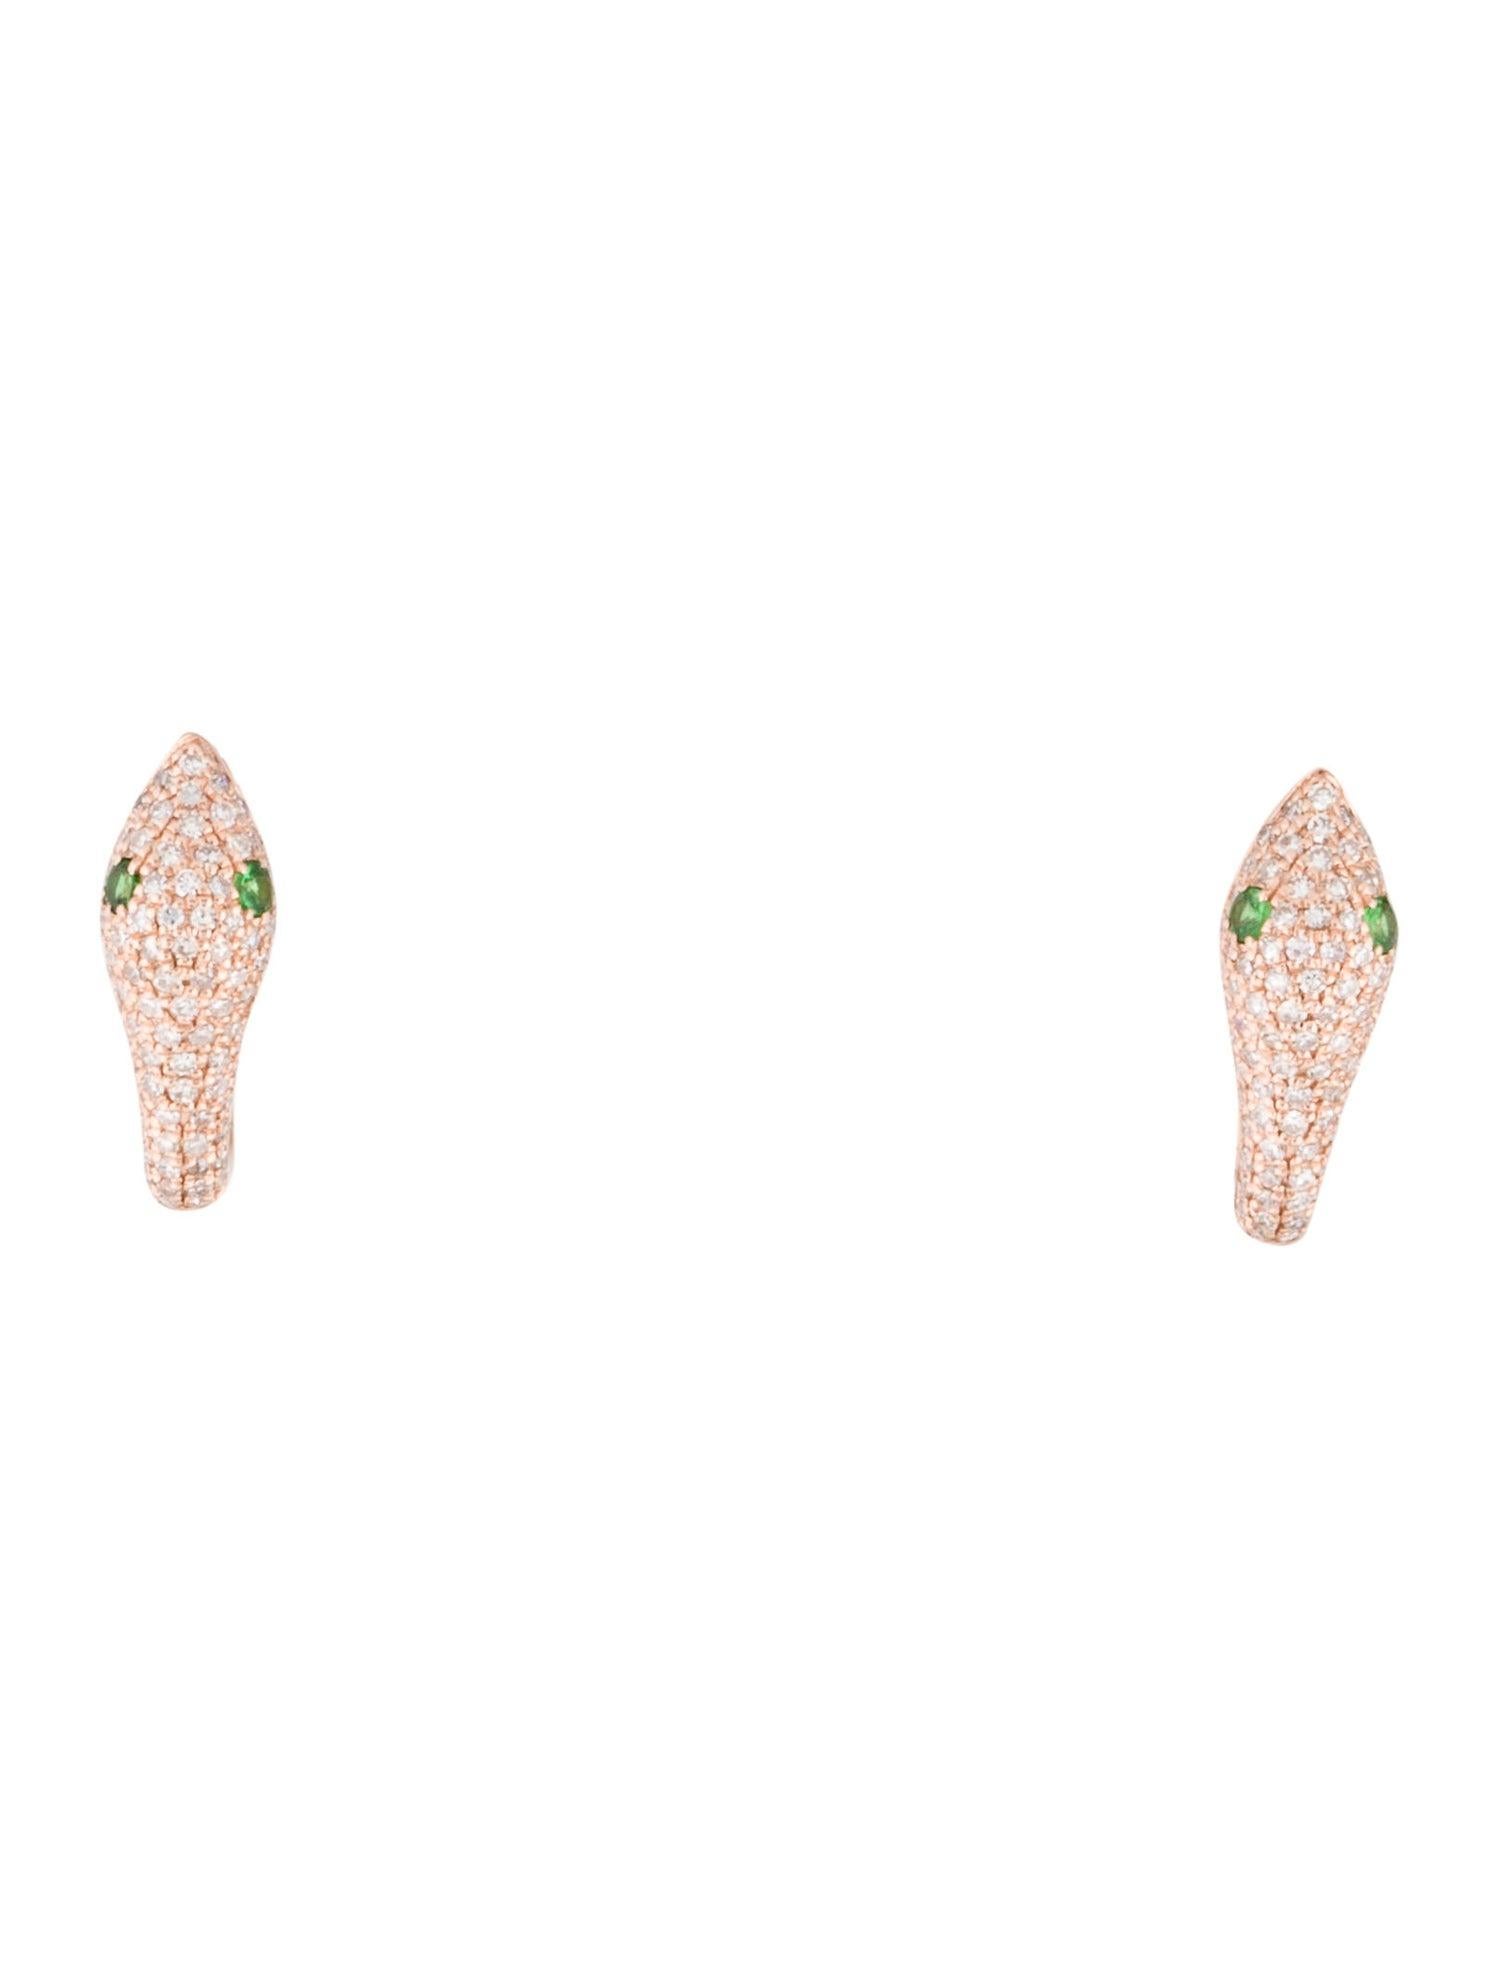 Contemporary 14K Rose Gold 0.46 Carat Diamond & Tsavorite Snake Earrings For Sale